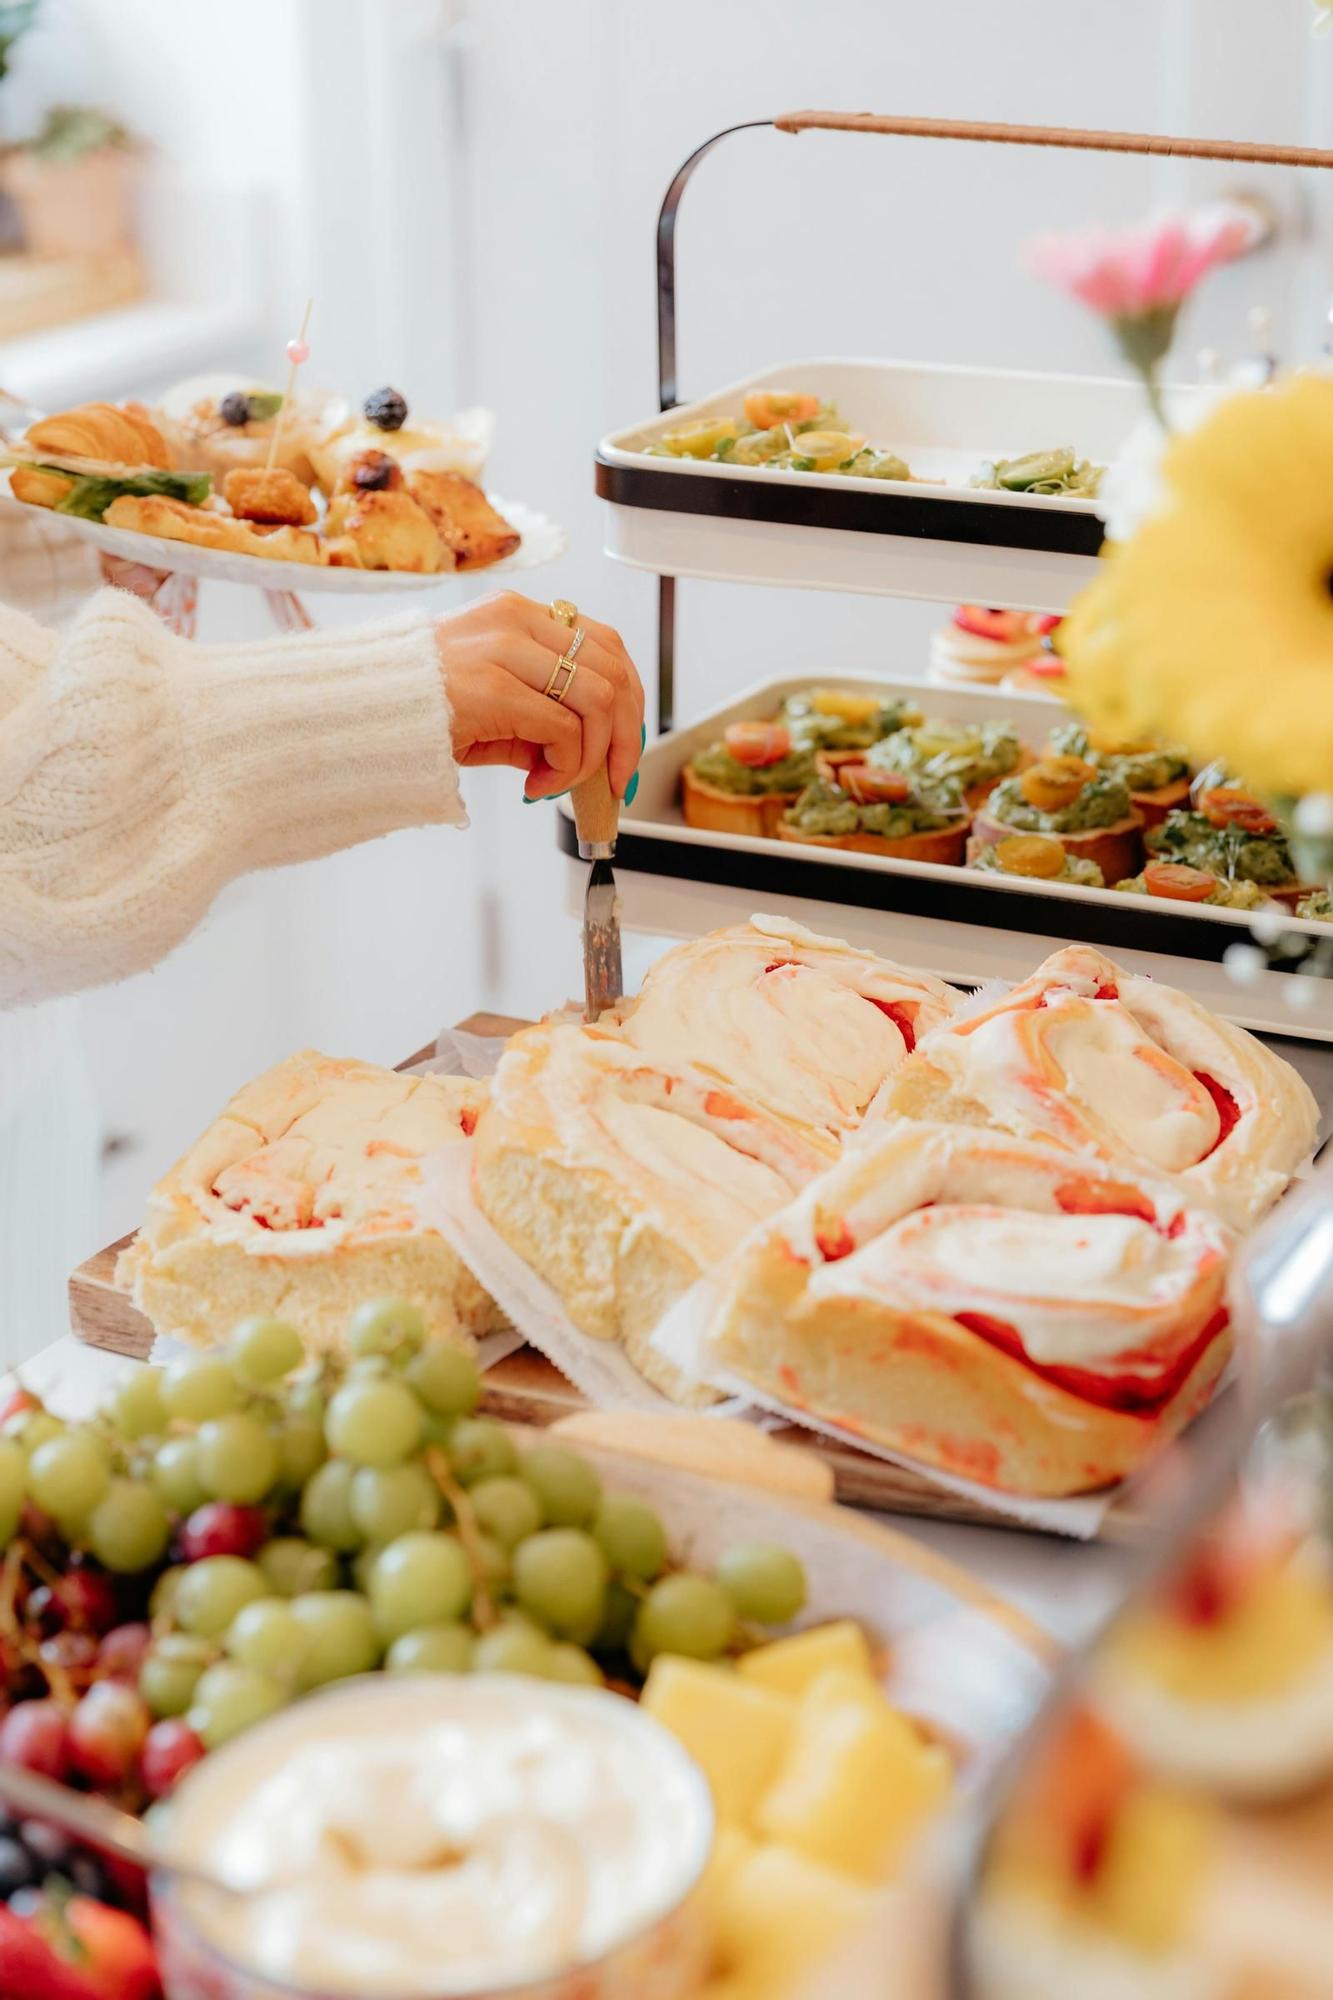 Los buffets libres o self-service ofrecen una gran cantidad y variedad de comida a sus clientes cada día del año